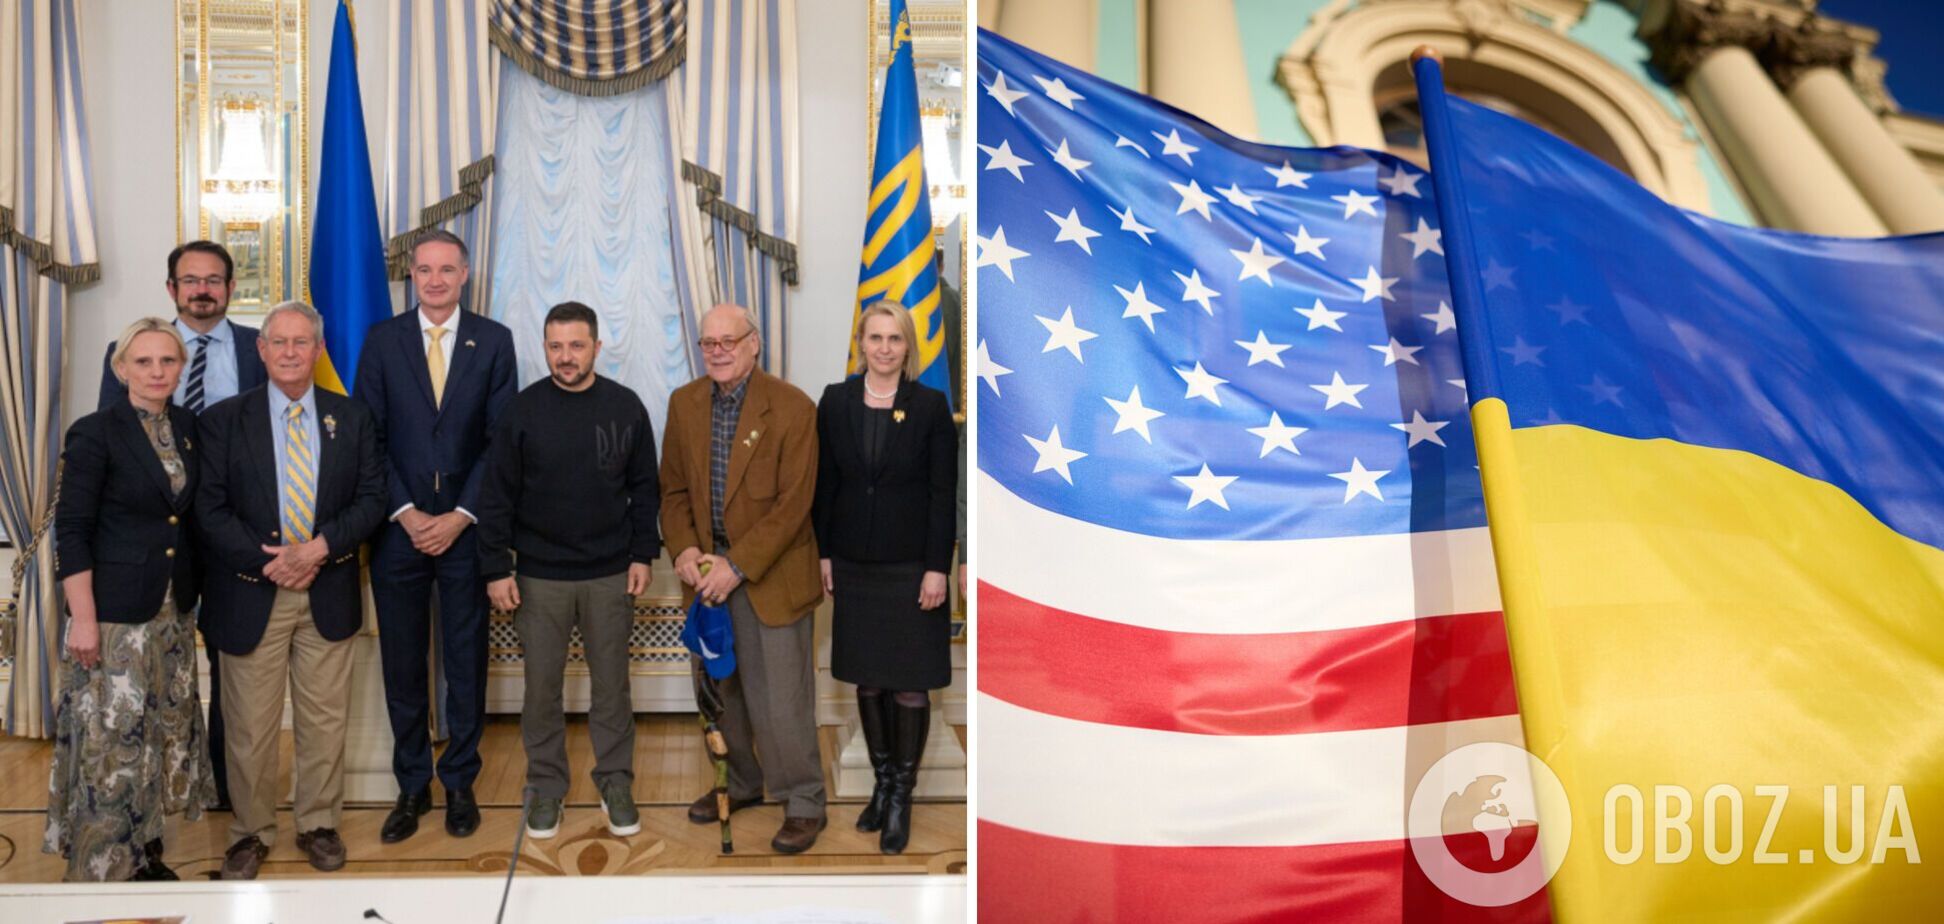 'Ценим мощную двухпалатную и двухпартийную поддержку': Зеленский встретился с делегацией конгрессменов США. Фото и видео